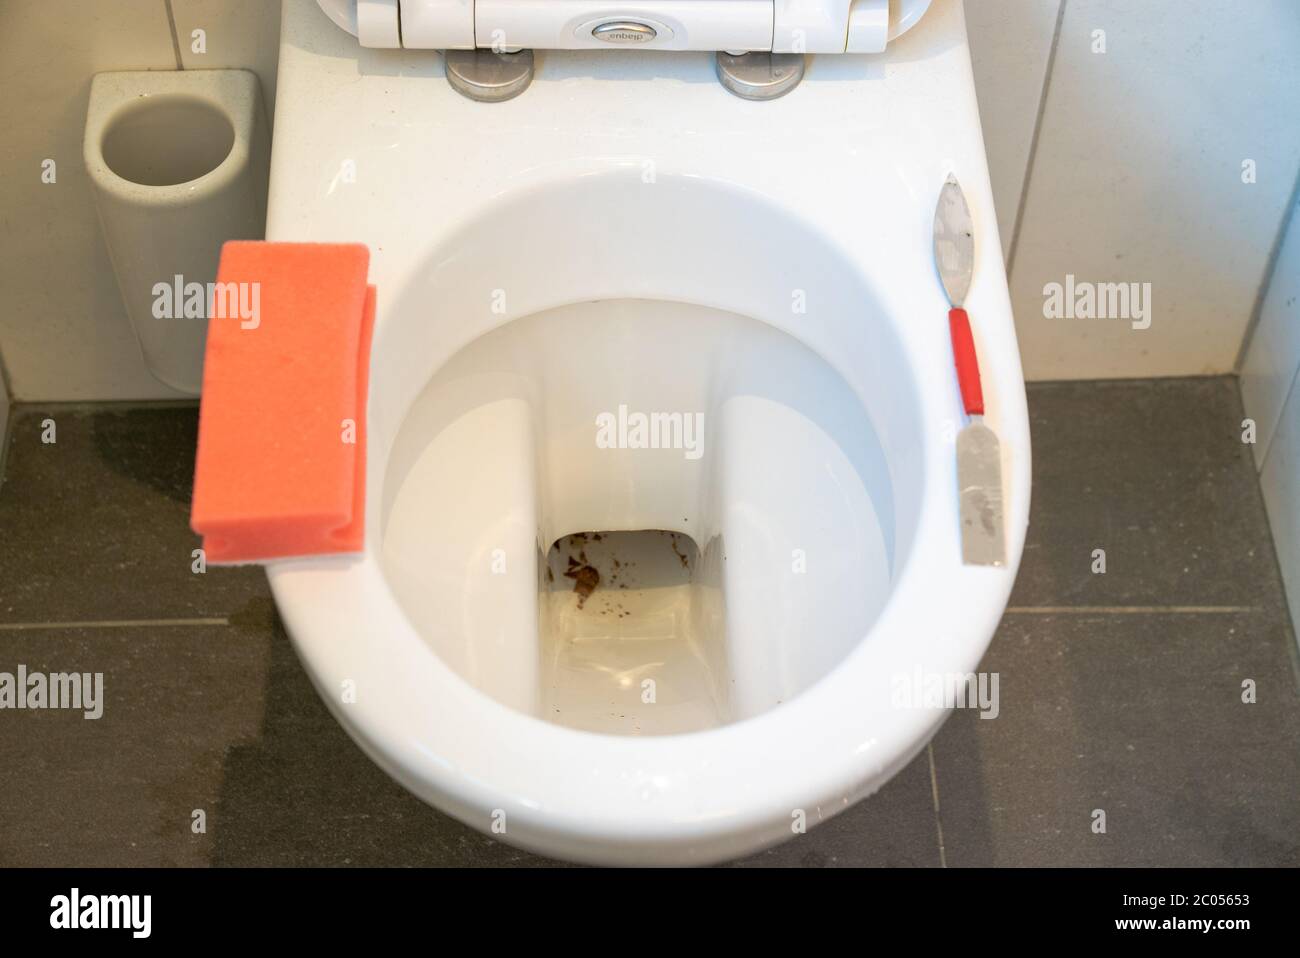 Eine Draufsicht auf eine saubere Toilette und einen Schwamm und einen  Schaber, mit dem Kalk und Flecken entfernt werden Stockfotografie - Alamy